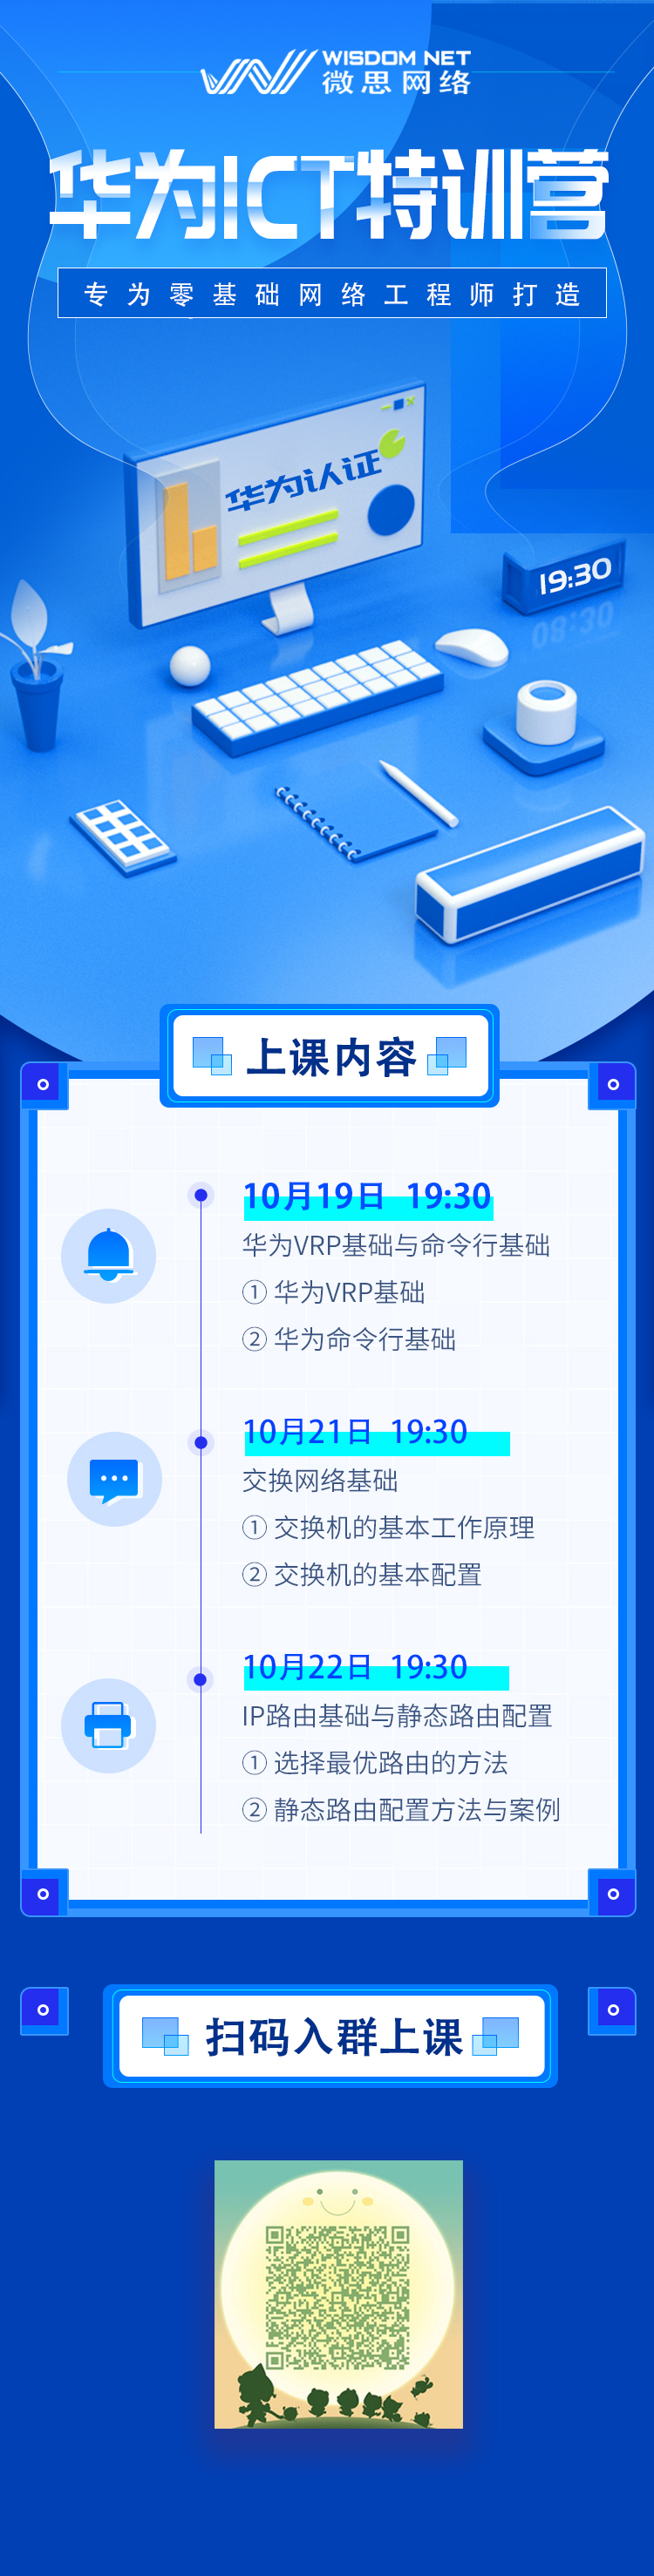 2020.10.19华为公开课.jpg